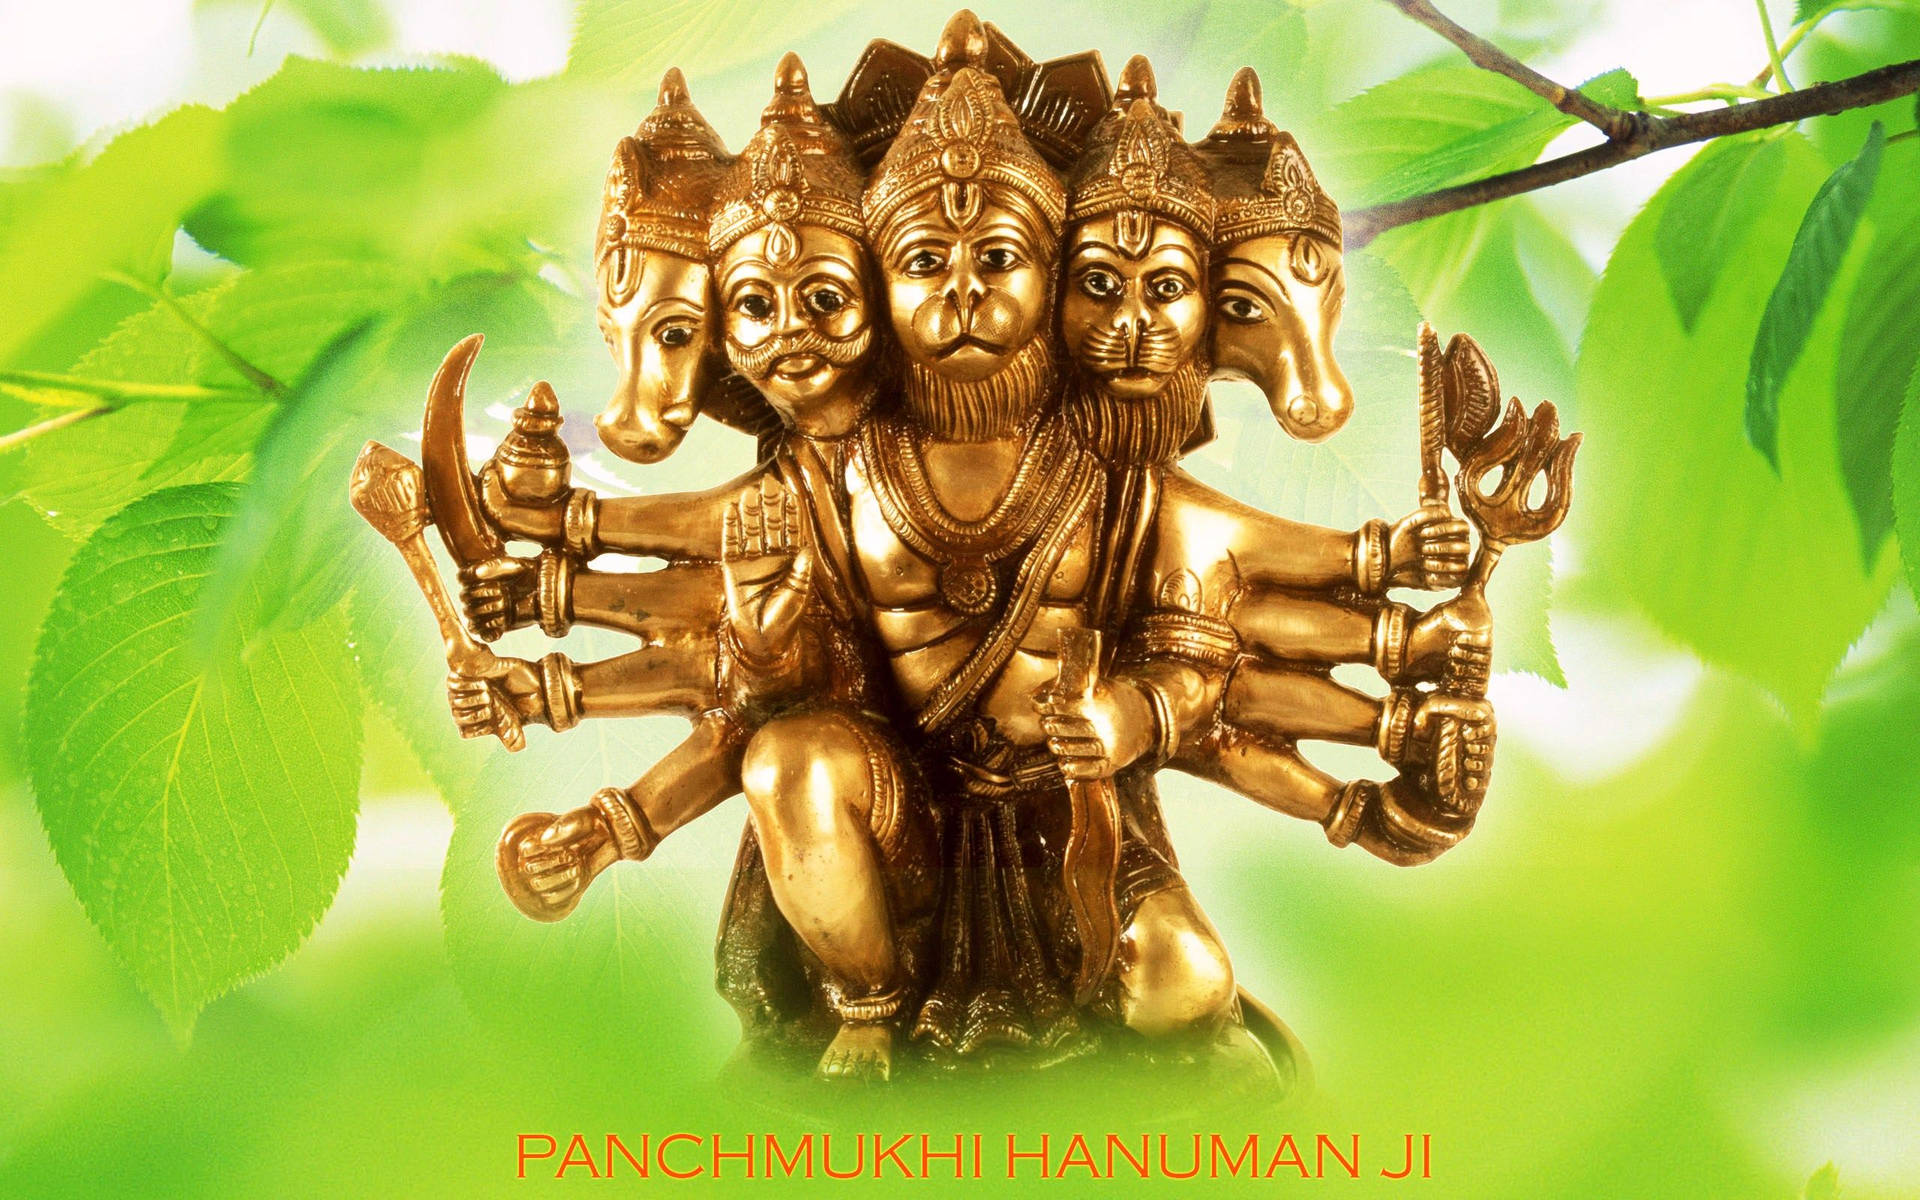 Free Panchmukhi Hanuman Wallpaper Downloads, [100+] Panchmukhi Hanuman  Wallpapers for FREE 